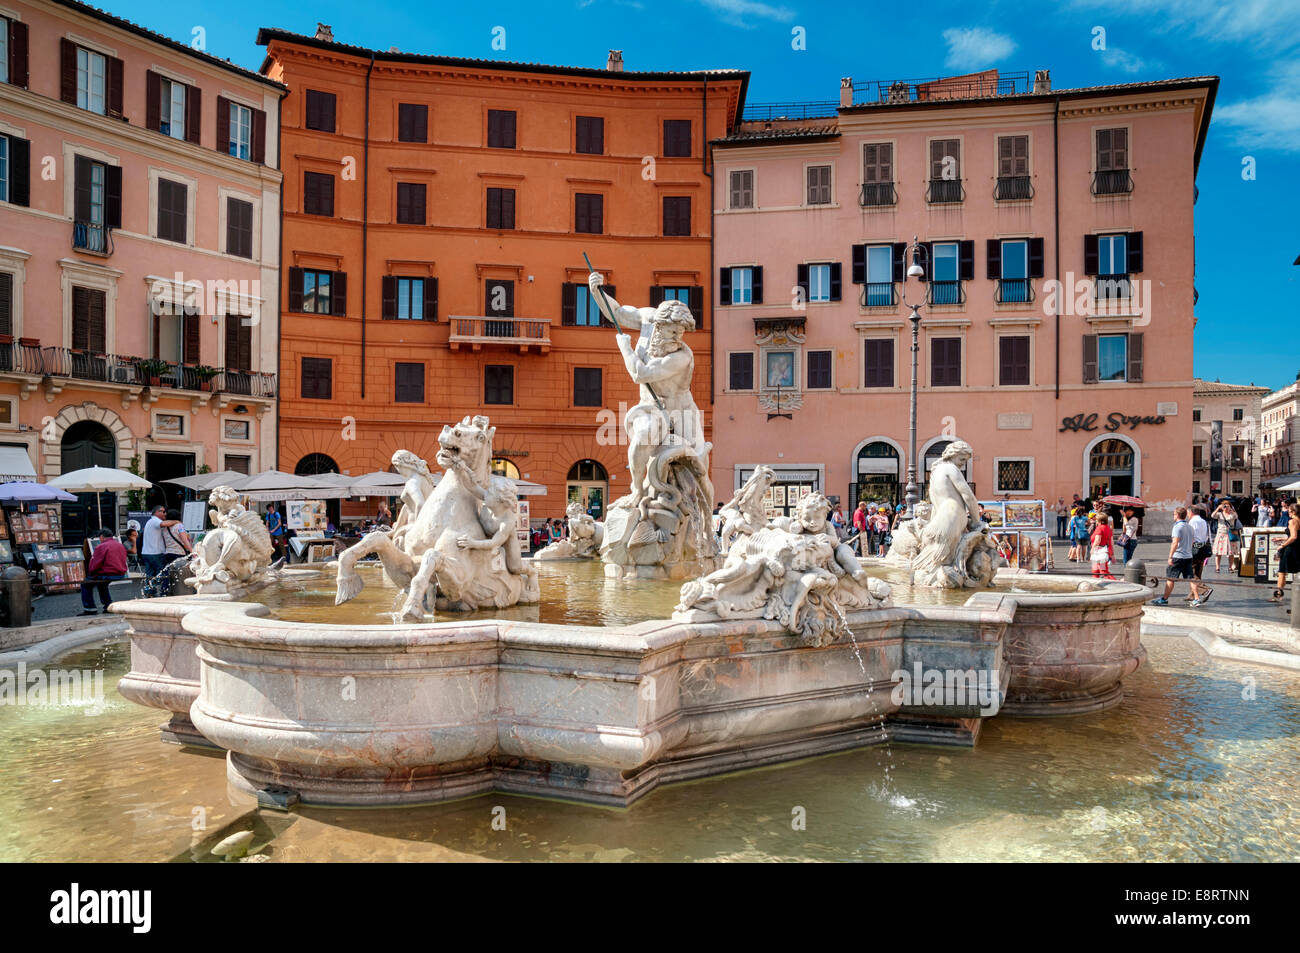 Rome, Italie - 12 mai 2012 : les touristes visitant la fontaine de Neptune de la Piazza Navona, Rome - Italie Banque D'Images